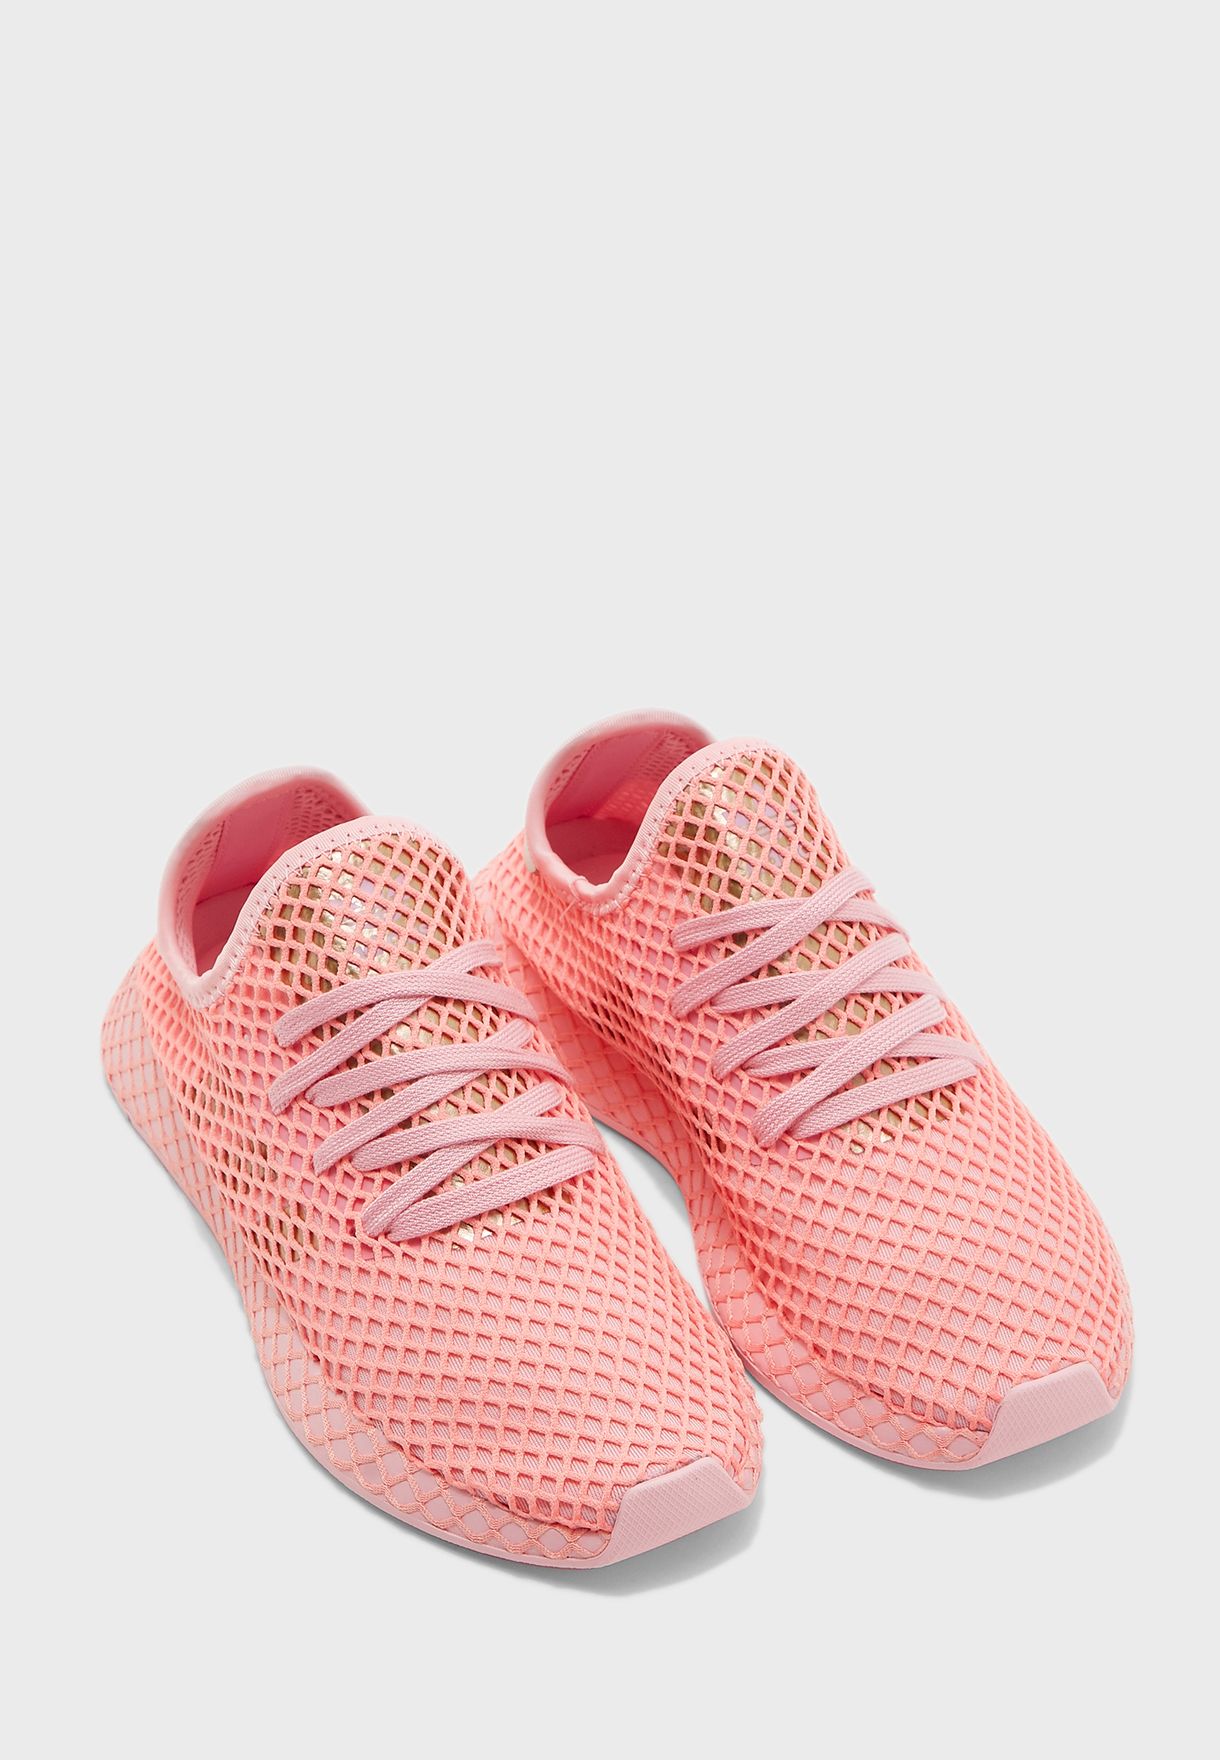 adidas originals deerupt runner pink